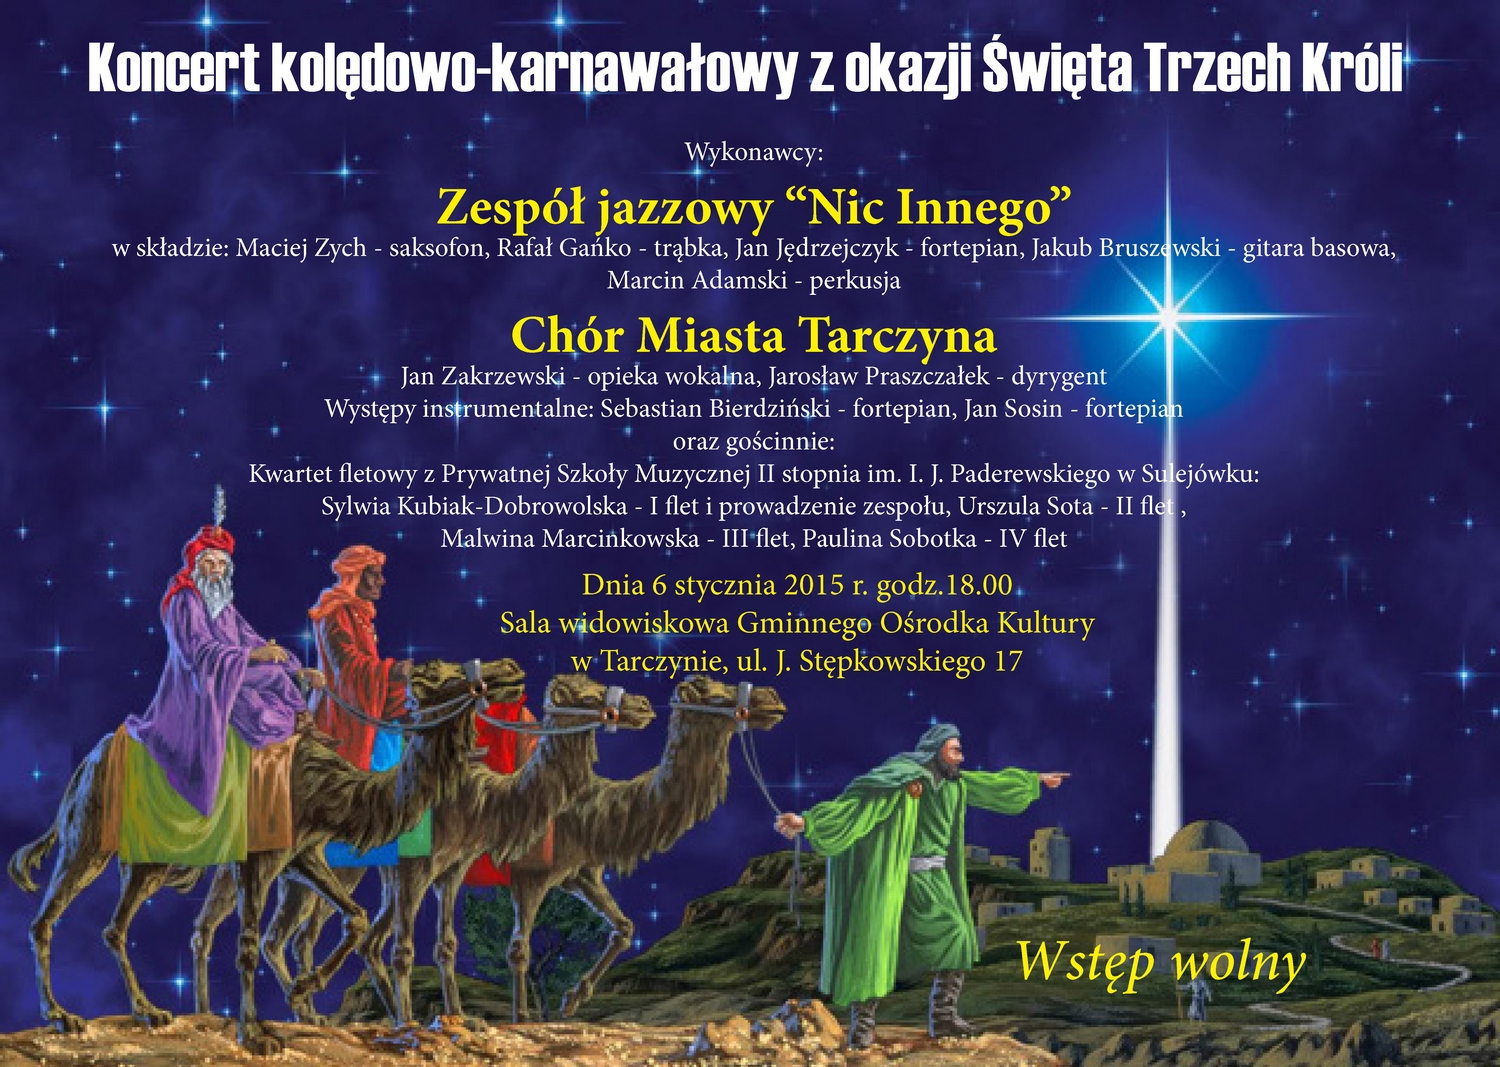 Koncert kolędowo-karnawałowy z okazji Święta Trzech Króli w Tarczynie